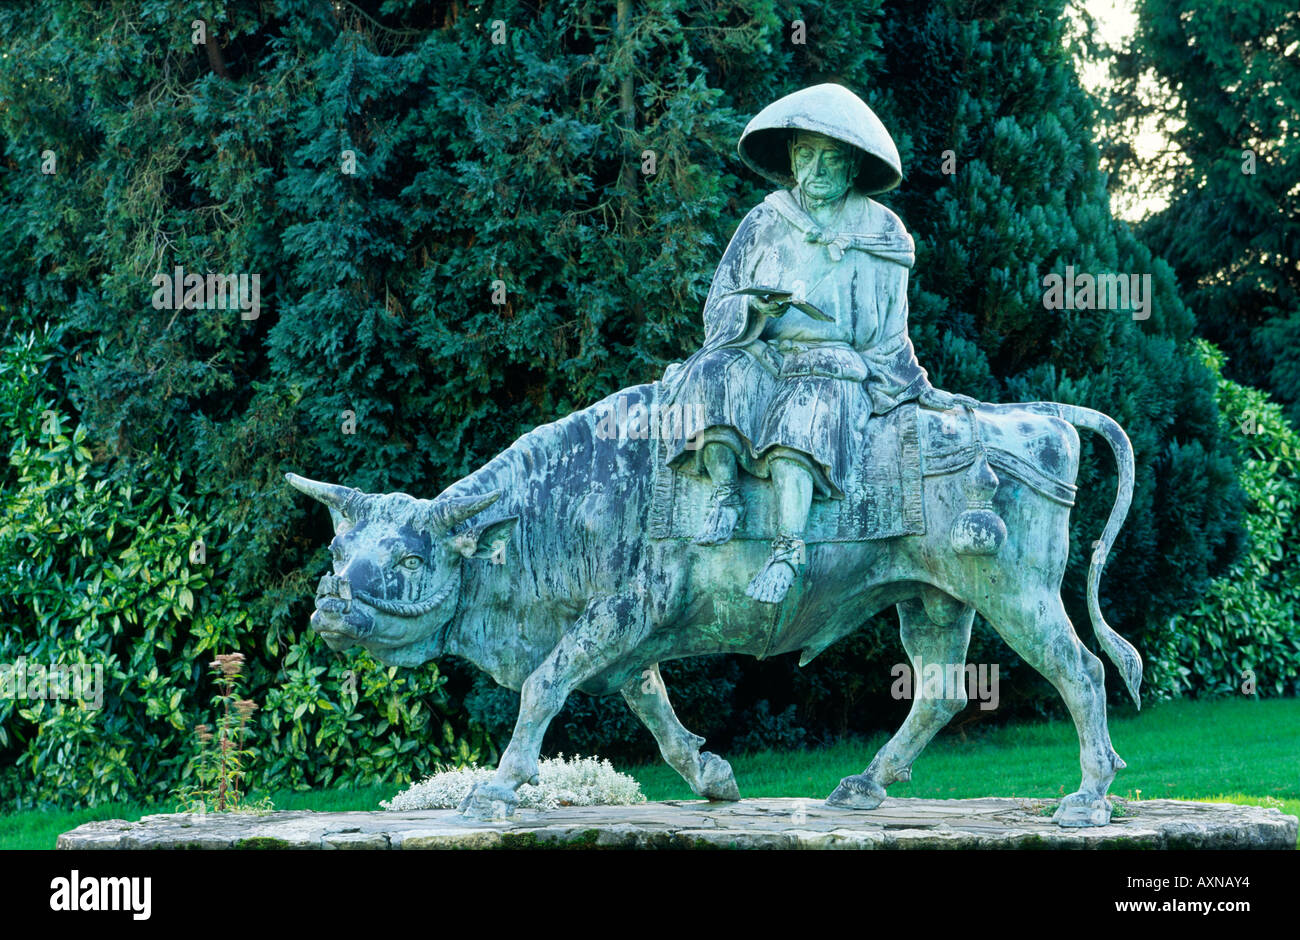 Statue de bronze de la Chine ancienne, philosophe taoïste Lao-tseu équitation un bœuf dans la région de Duffryn Gardens, South Glamorgan, Pays de Galles, Royaume-Uni Banque D'Images